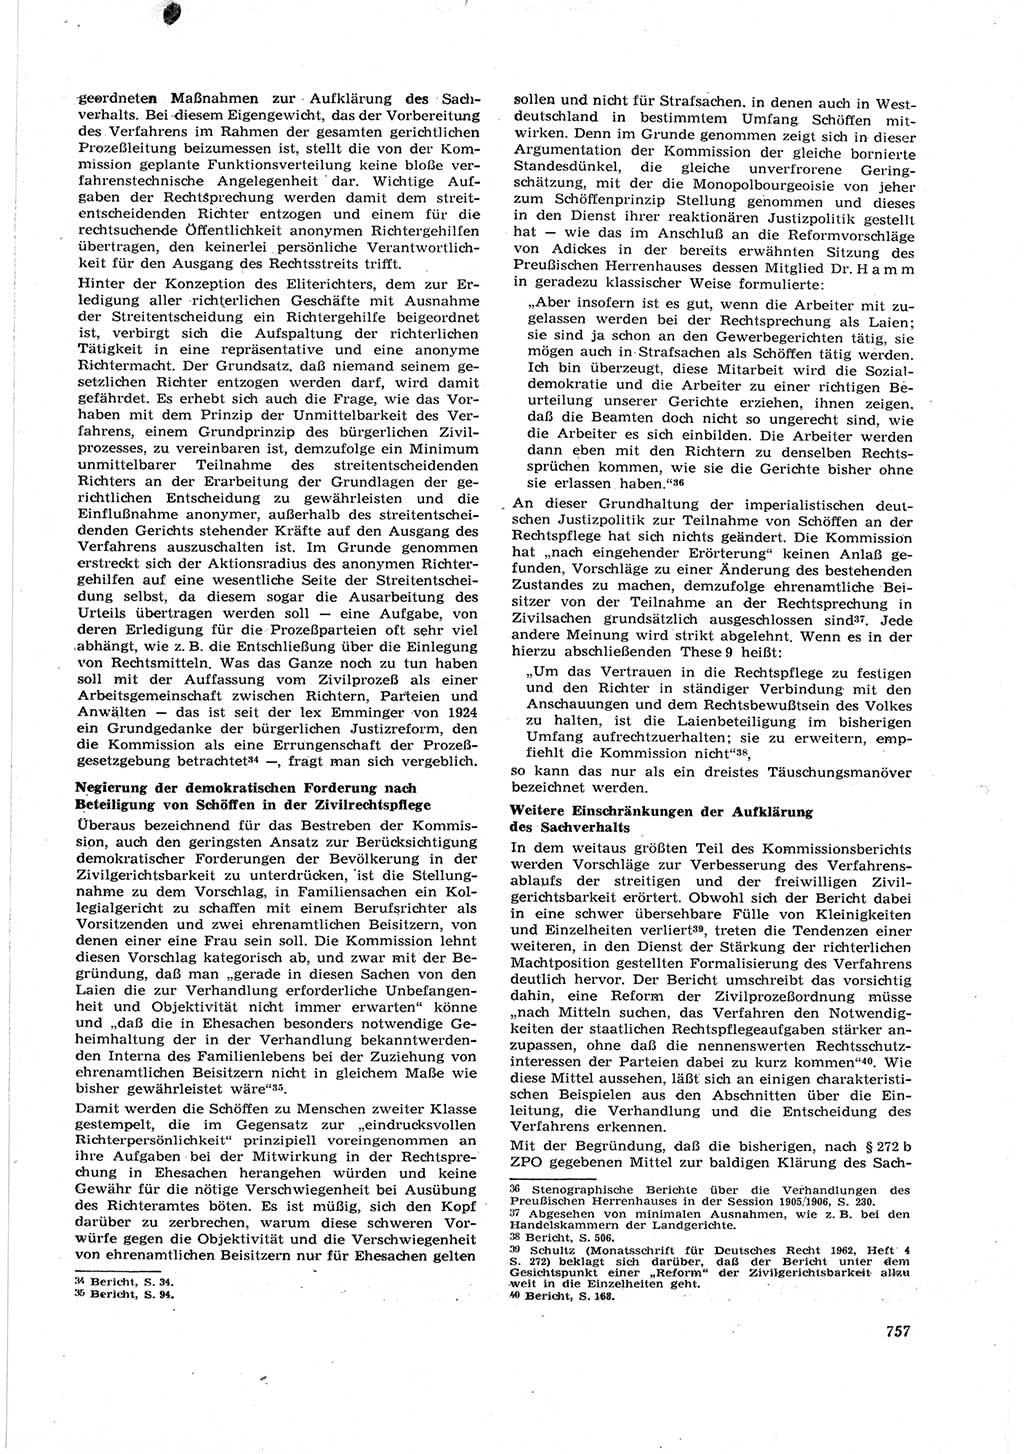 Neue Justiz (NJ), Zeitschrift für Recht und Rechtswissenschaft [Deutsche Demokratische Republik (DDR)], 17. Jahrgang 1963, Seite 757 (NJ DDR 1963, S. 757)